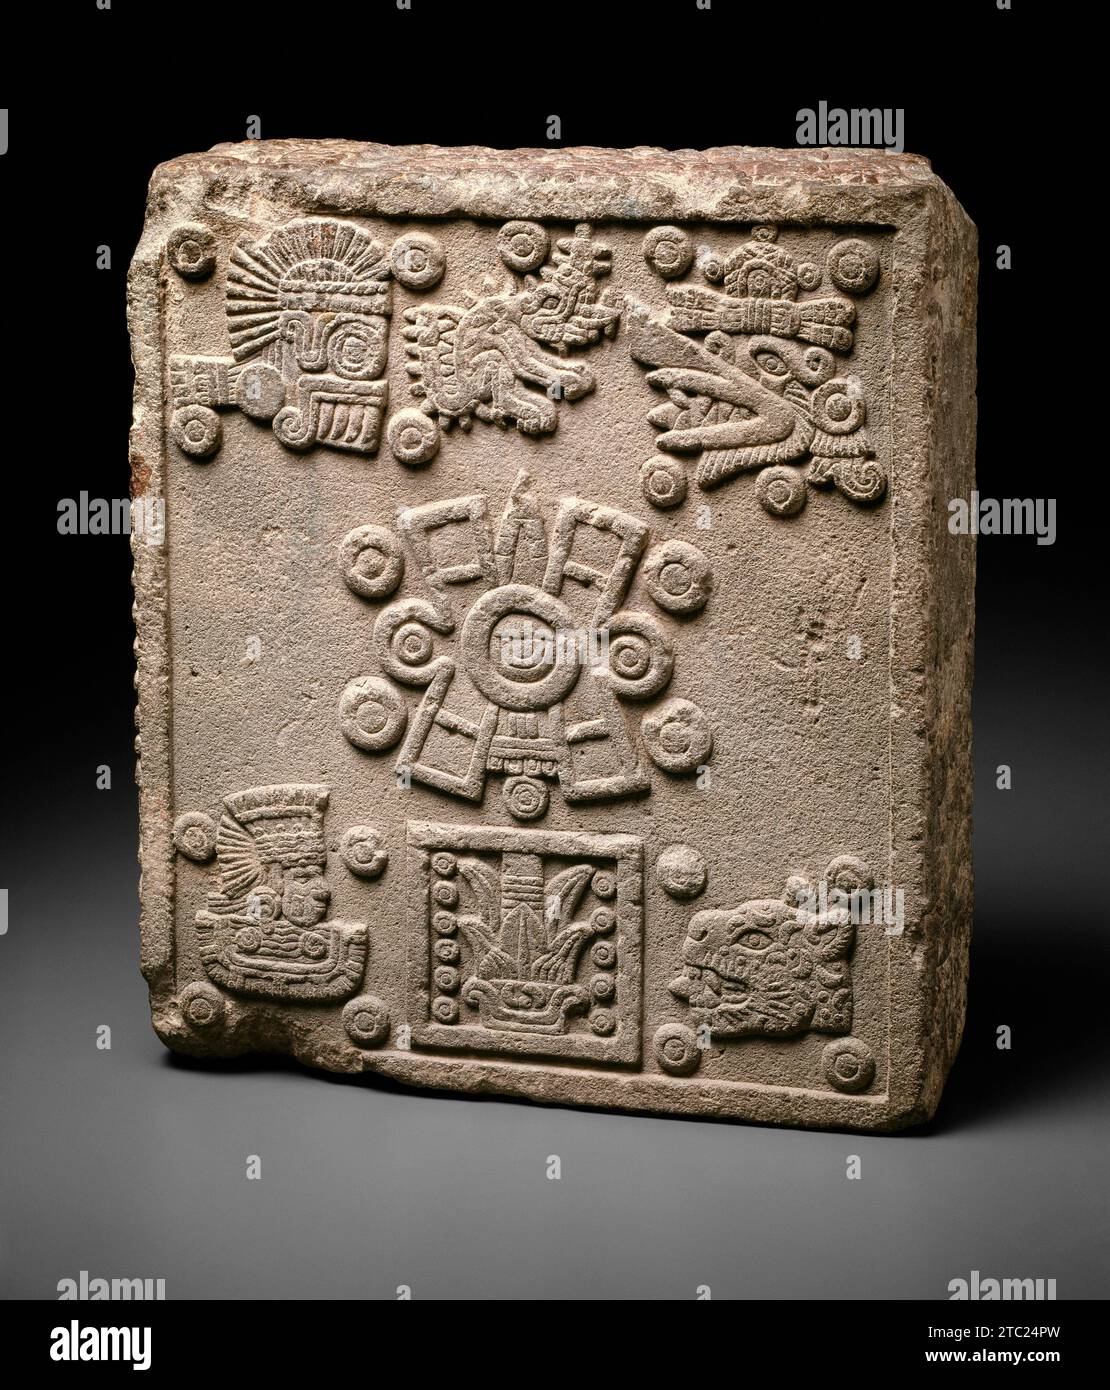 Pierre de couronnement de Motecuhzoma II (Pierre des cinq soleils) aztèque (Mexica) de Tenochtitlan, Mexique 1503 Banque D'Images